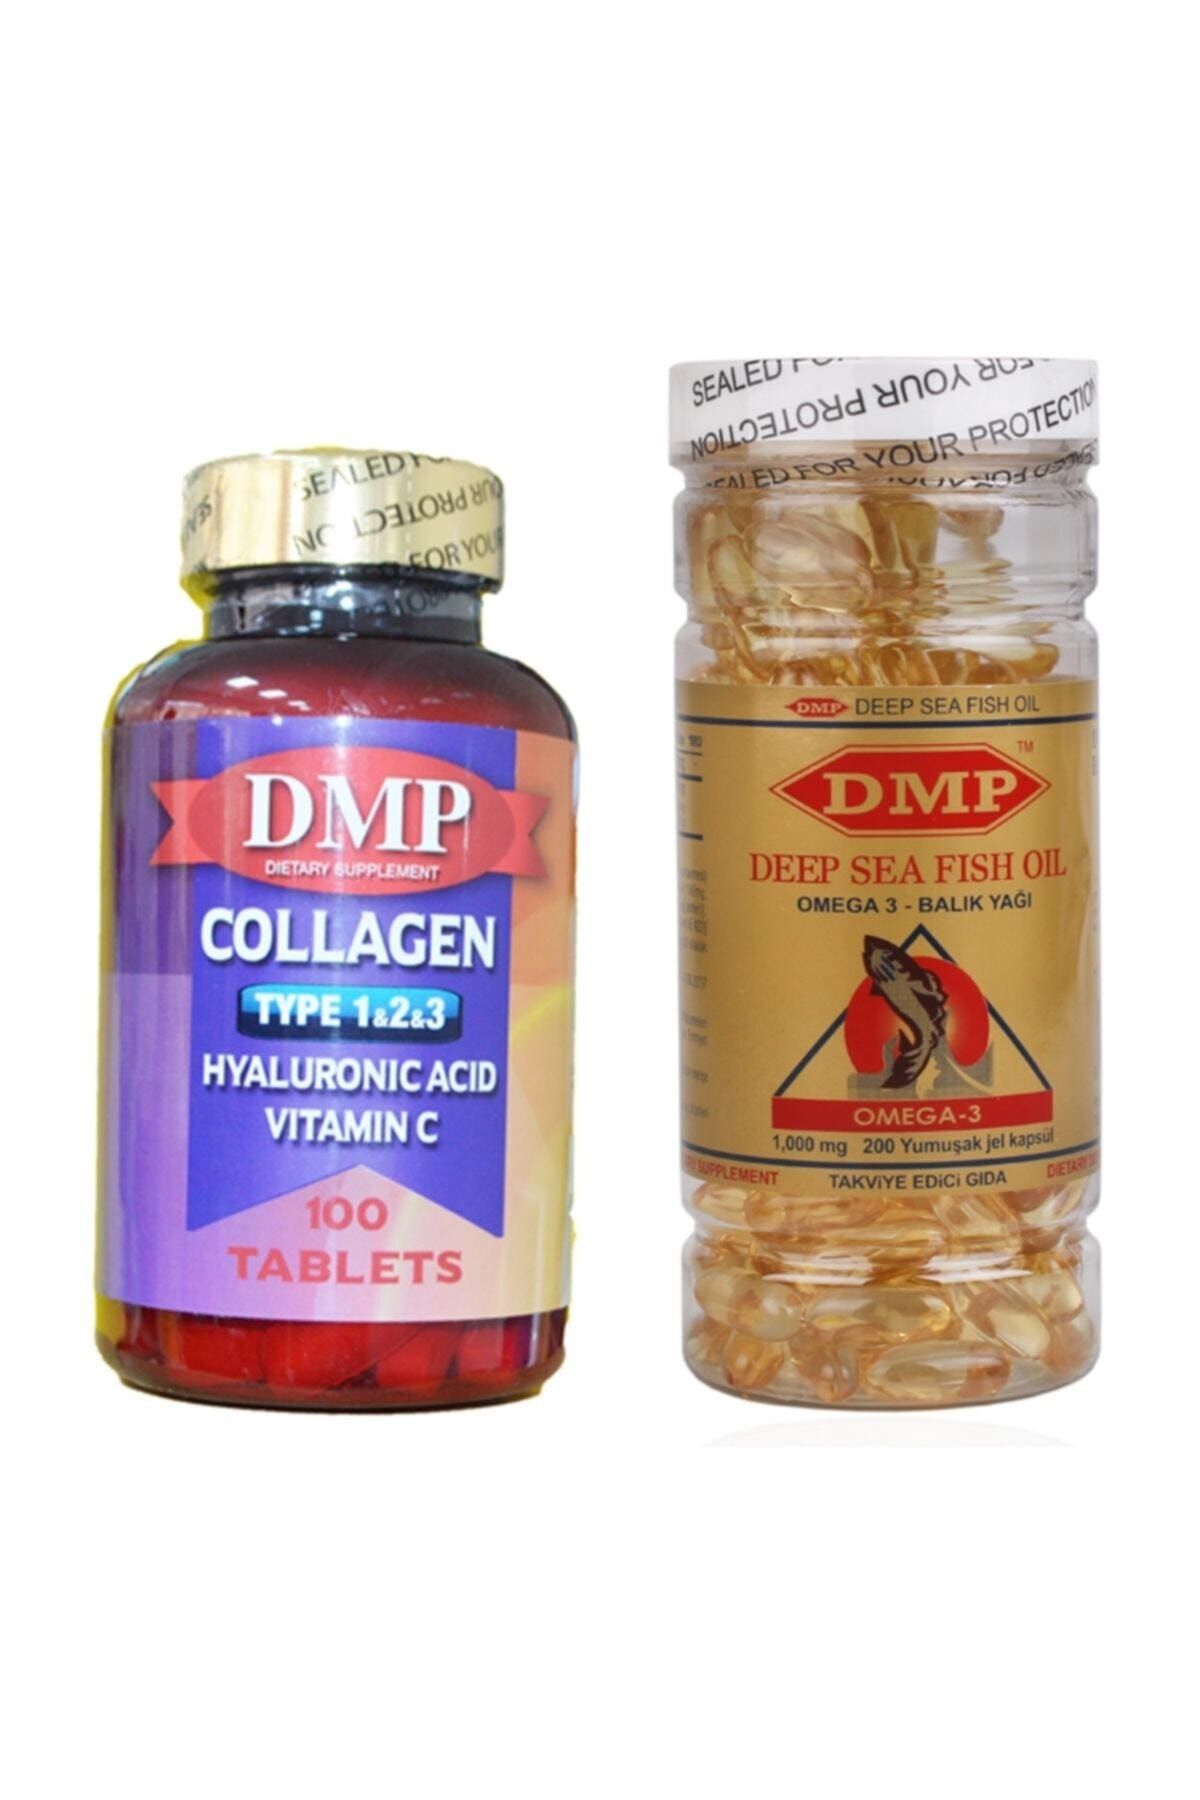 DMP COLLAGEN Tip 1-2-3 Hyaluronic Acid Vitamin C 100 Tablet Omega 3 1000 Mg 200 Capsül